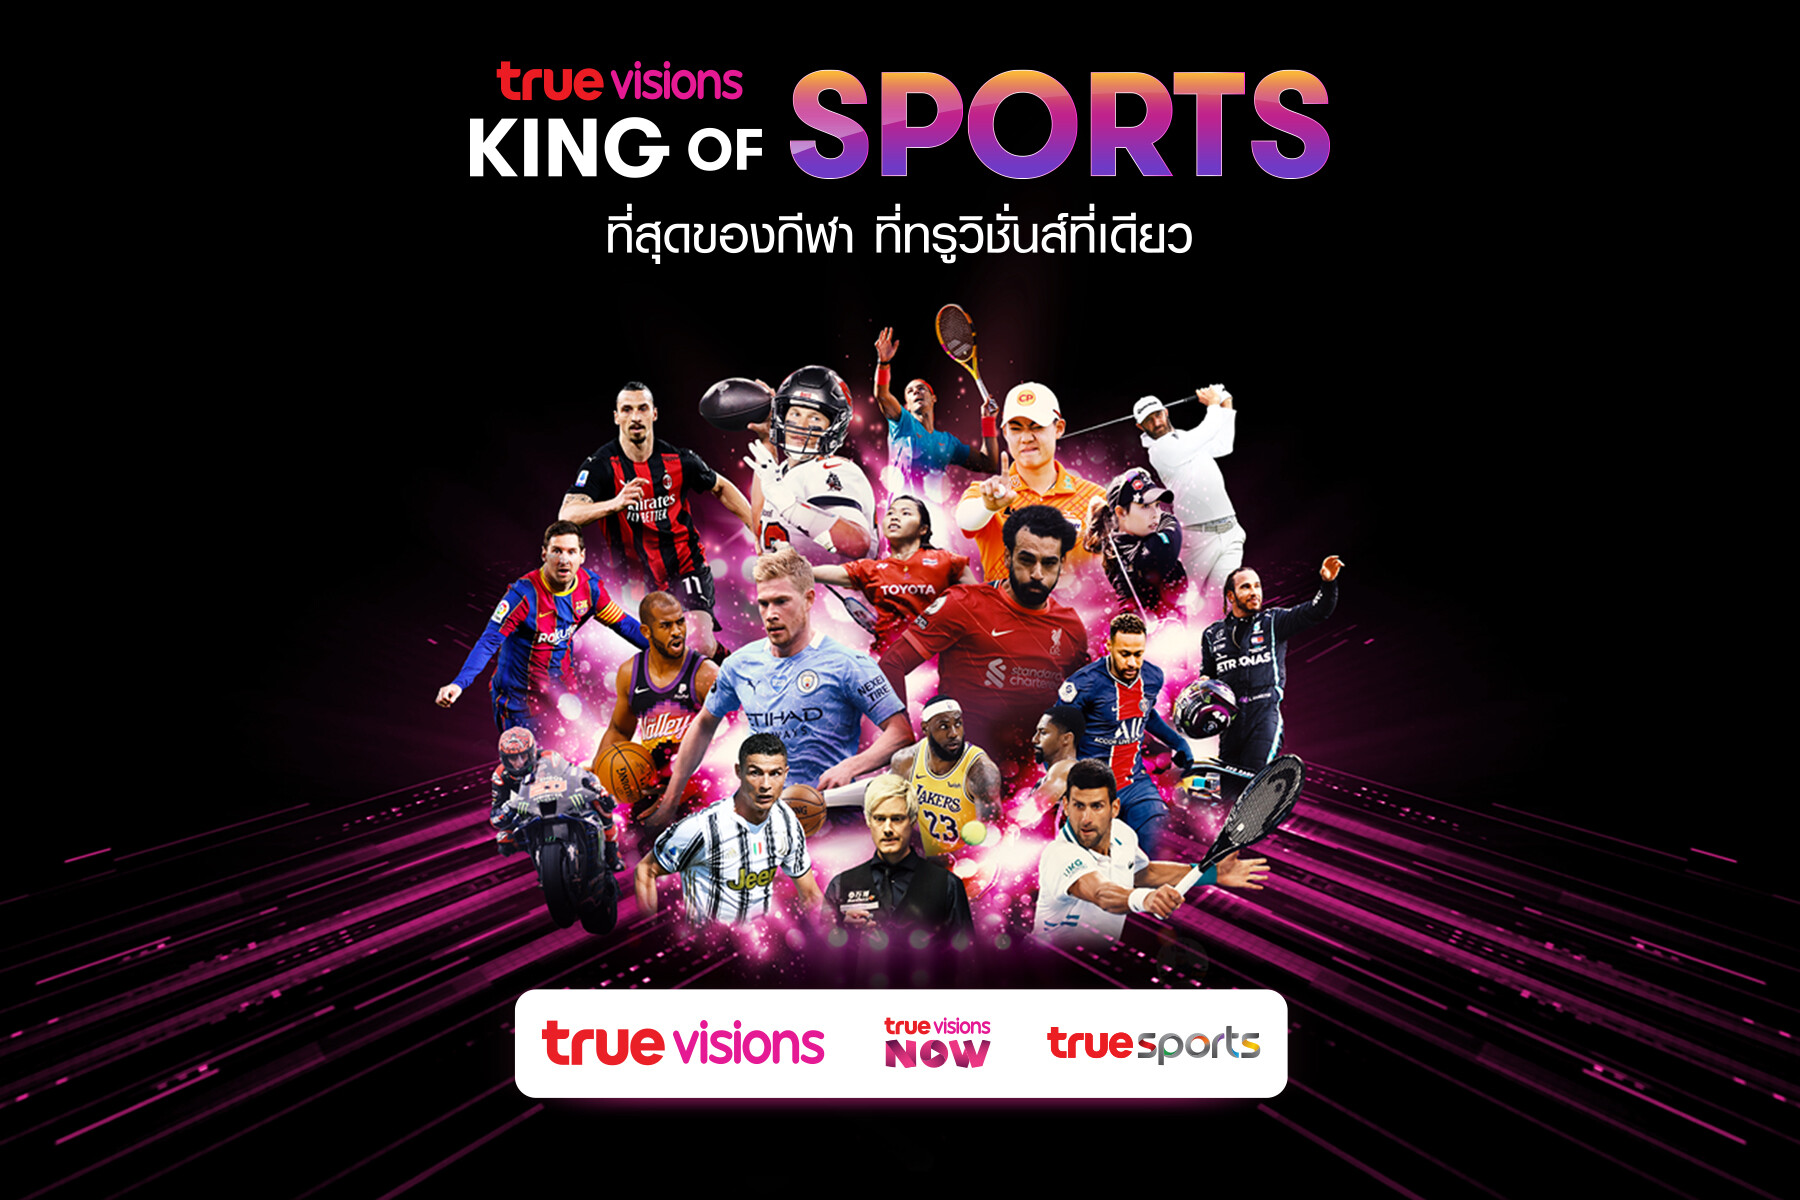 ทรูวิชั่นส์" ประกาศย้ำความเป็น "คิง ออฟ สปอร์ตส์" ผู้นำการถ่ายทอดสดกีฬาจากทั่วโลก ให้แฟนกีฬาชาวไทยเต็มอิ่มสุดๆ กับหลากหลายประเภทกีฬาฮิตที่ครบสุดในไทย